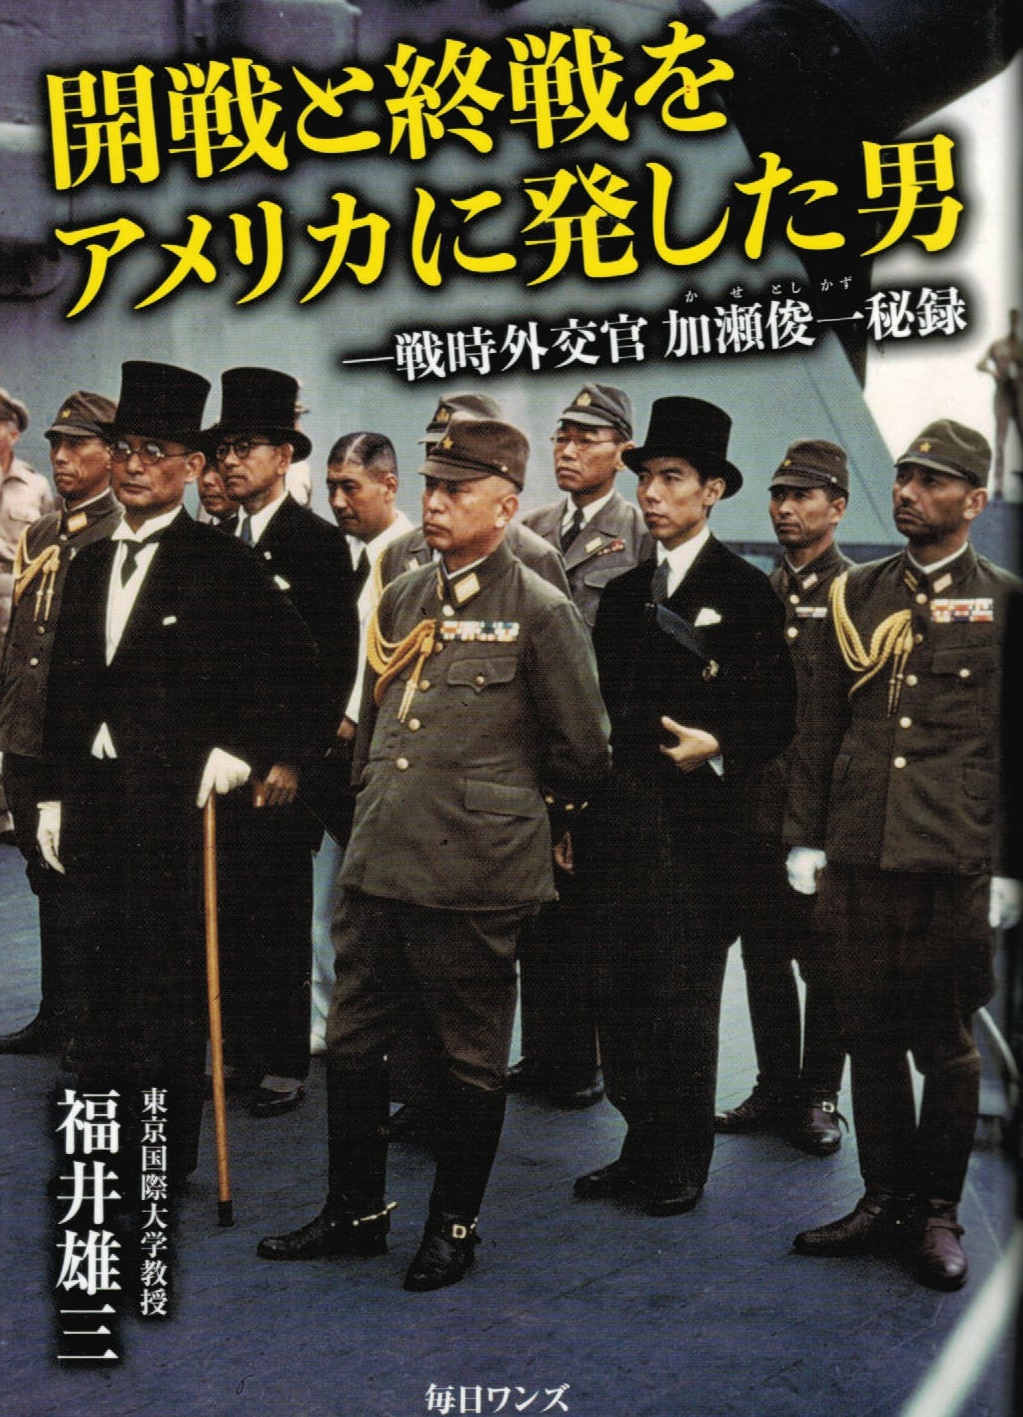 日本の戦争の時代についての一考察